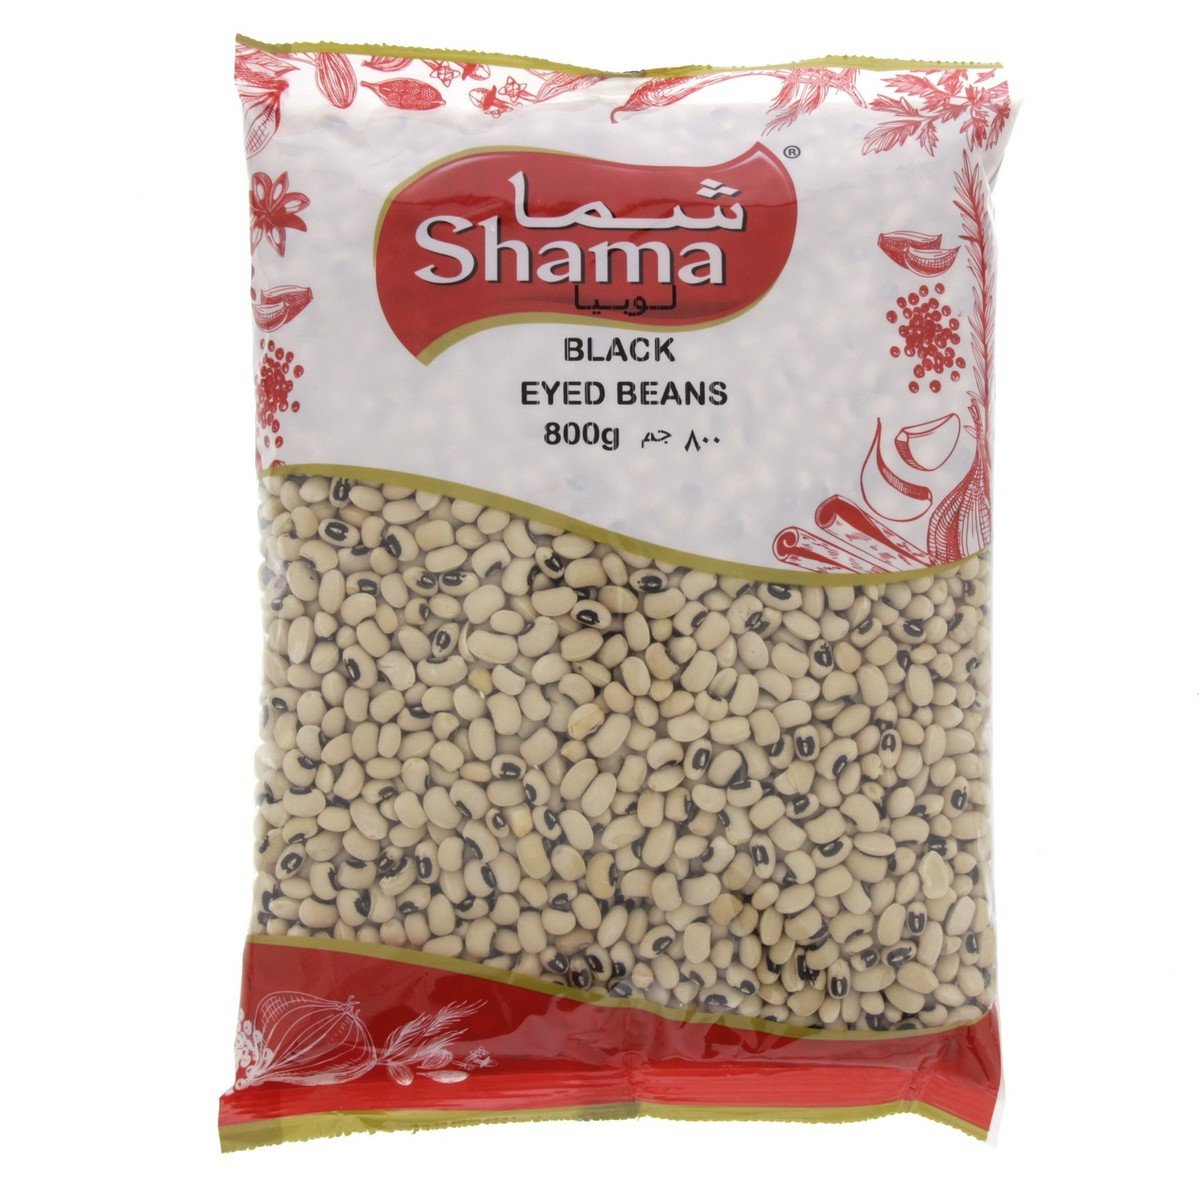 Shama Black Eyed Beans 800 g